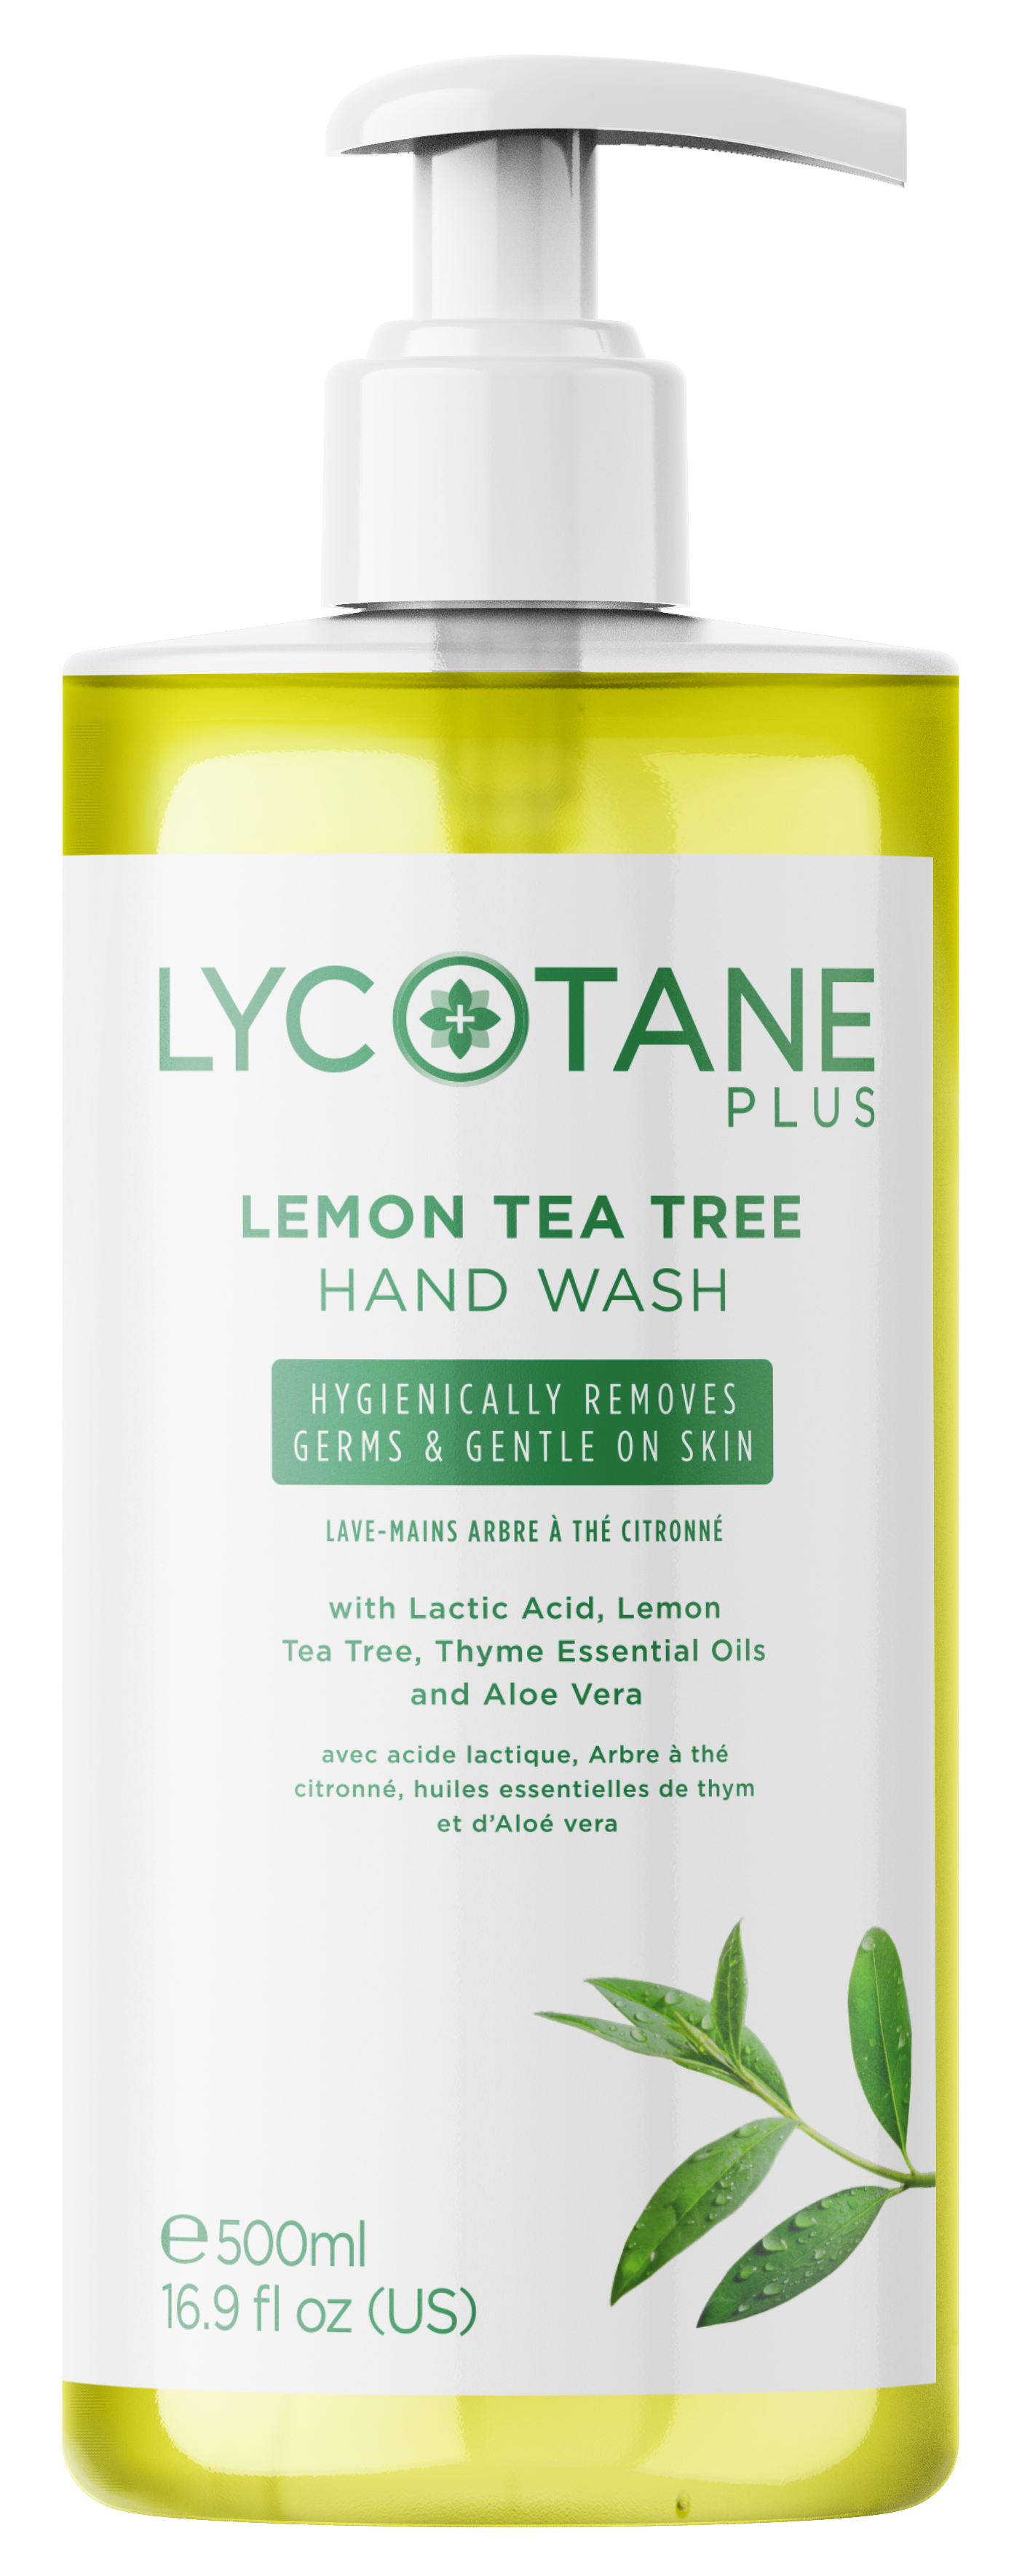 Lycotane Plus Lemon Tea Tree Hand Wash